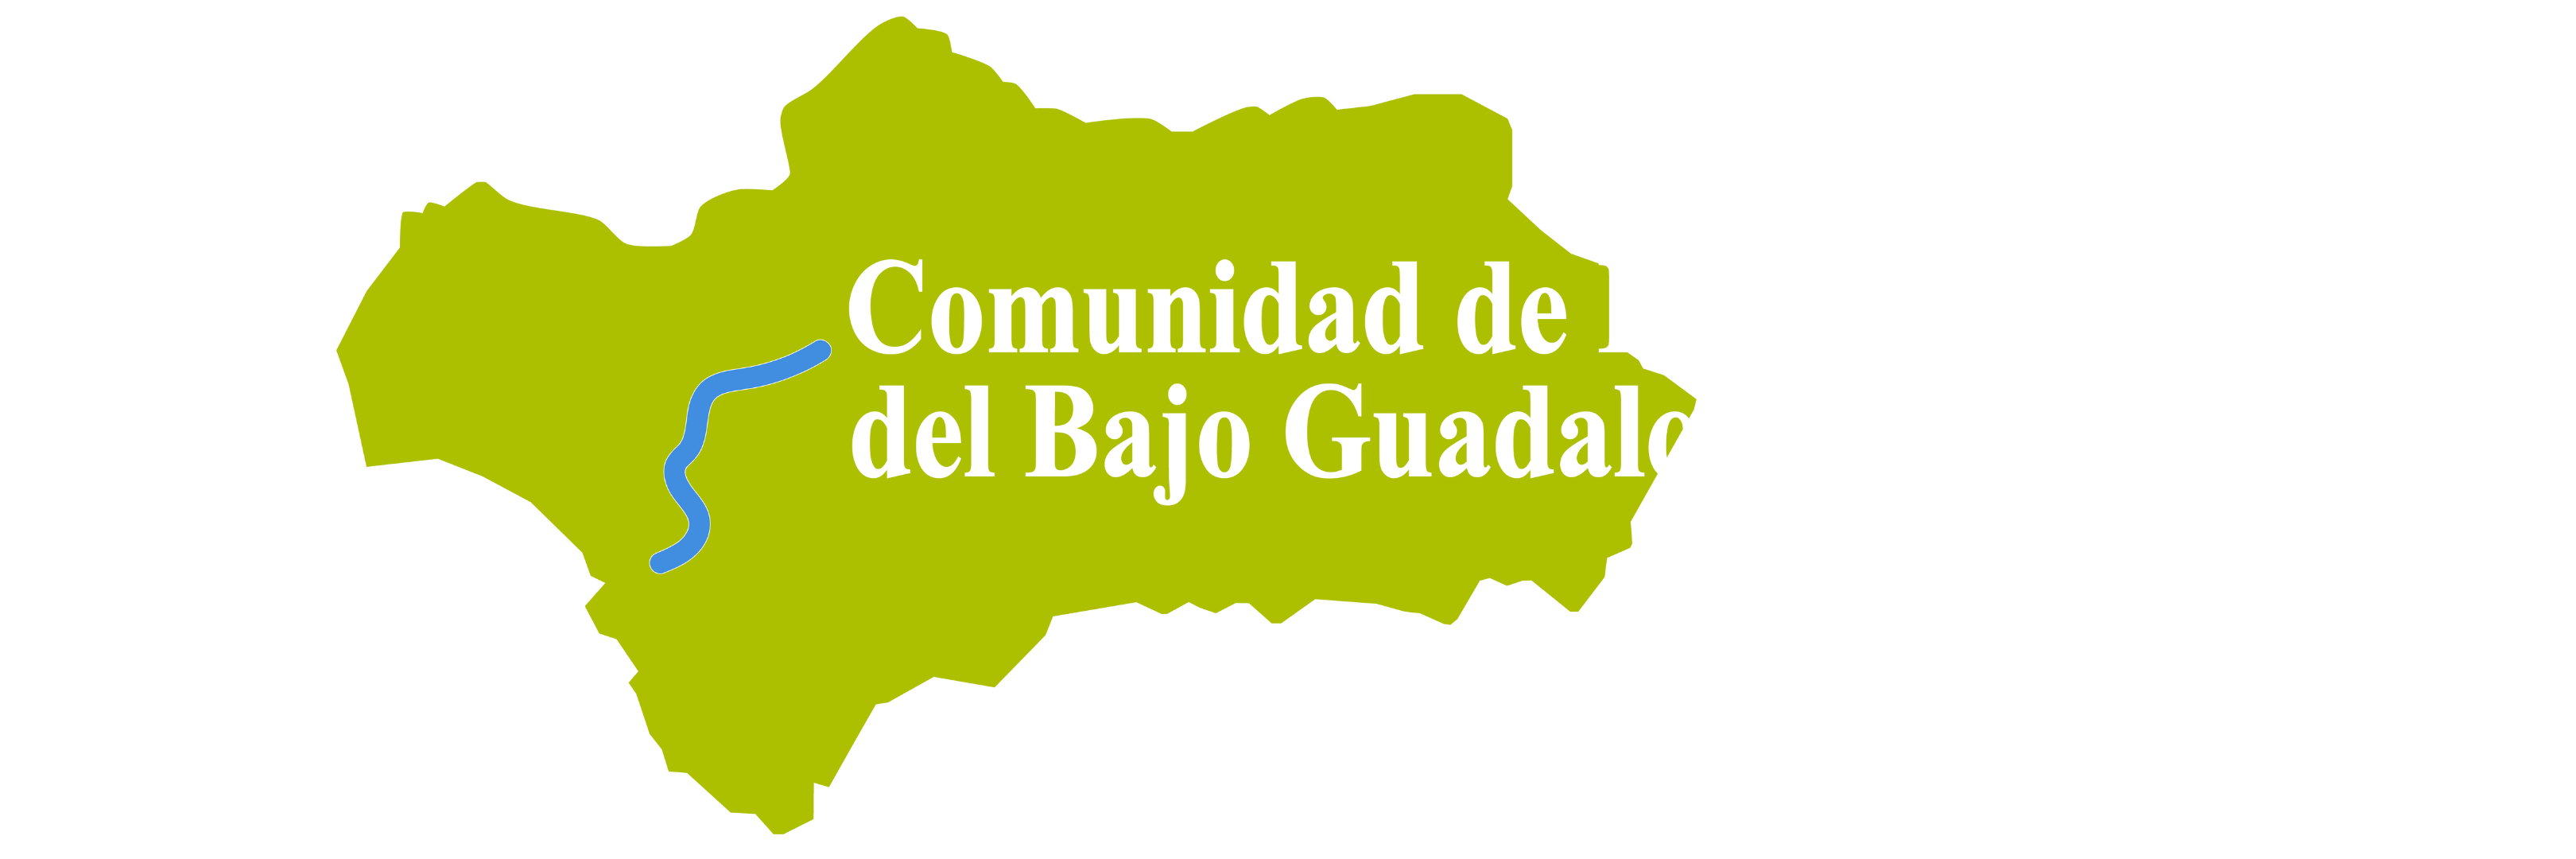 Comunidad de Regantes del Bajo Guadalquivir